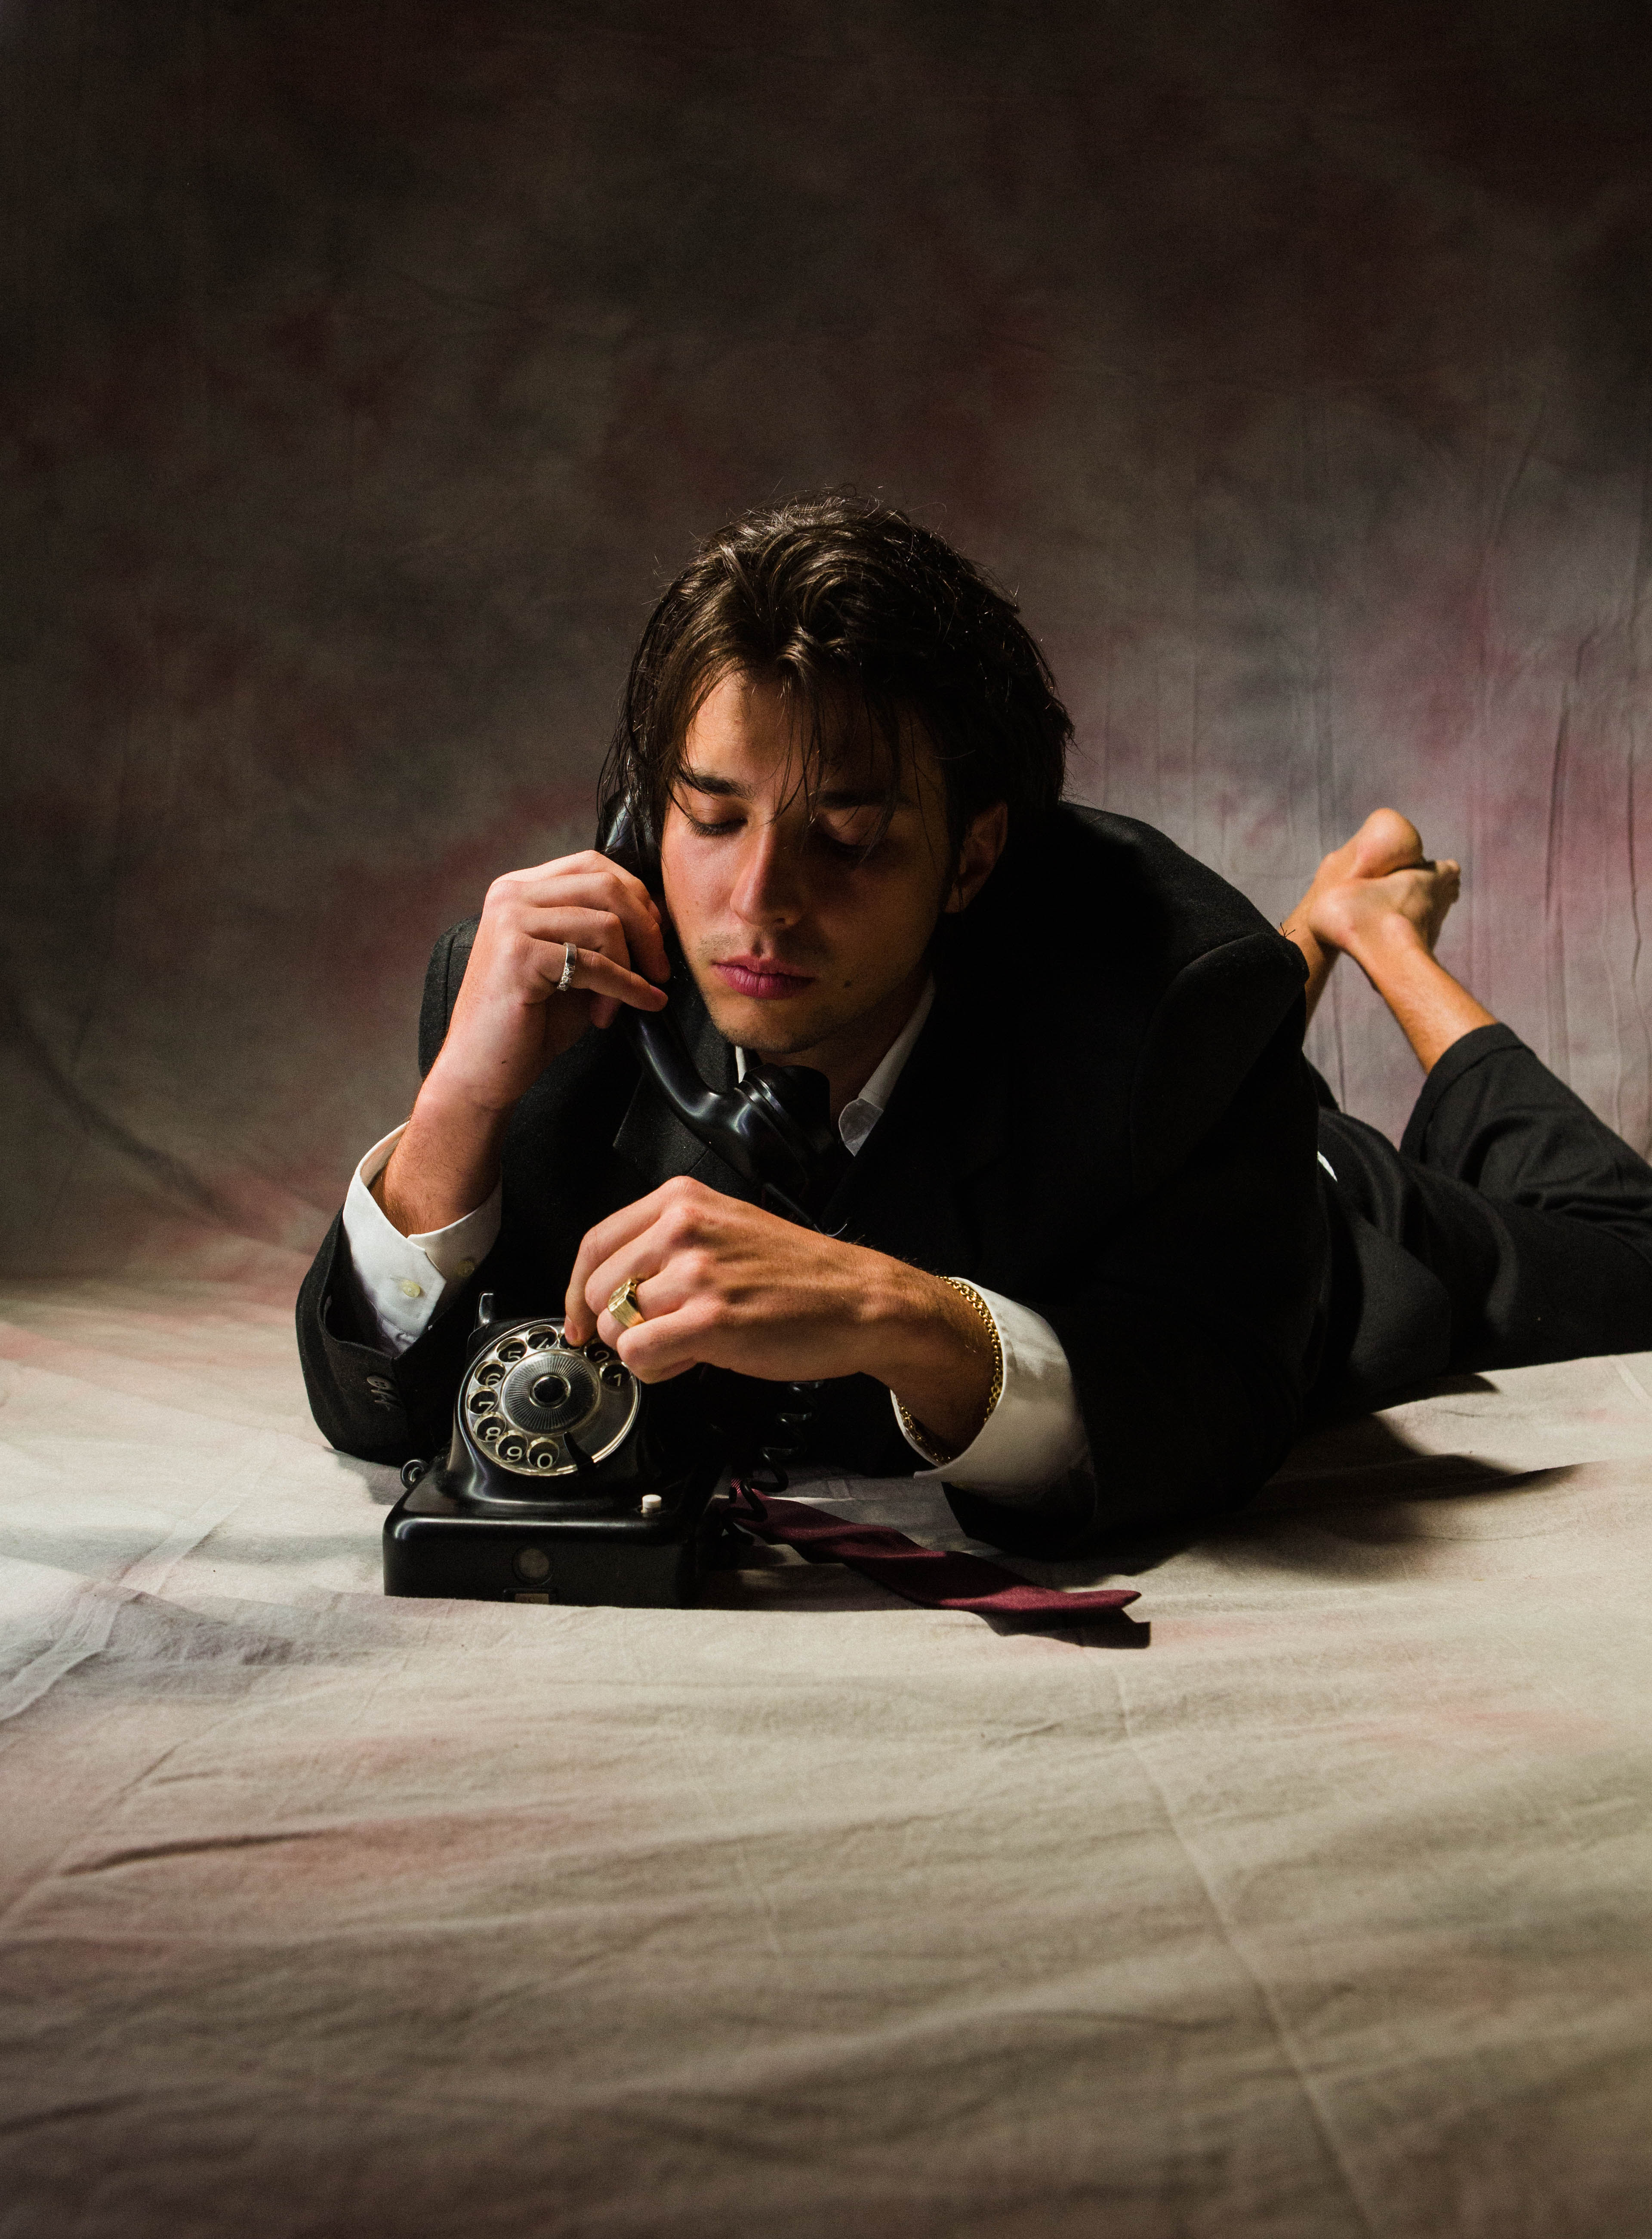 Das Bild zeigt den Musiker Bibiza, wie er in einem schwarzen Anzug auf dem Bauch liegend mit einem alten Wählscheibentelefon telefoniert.